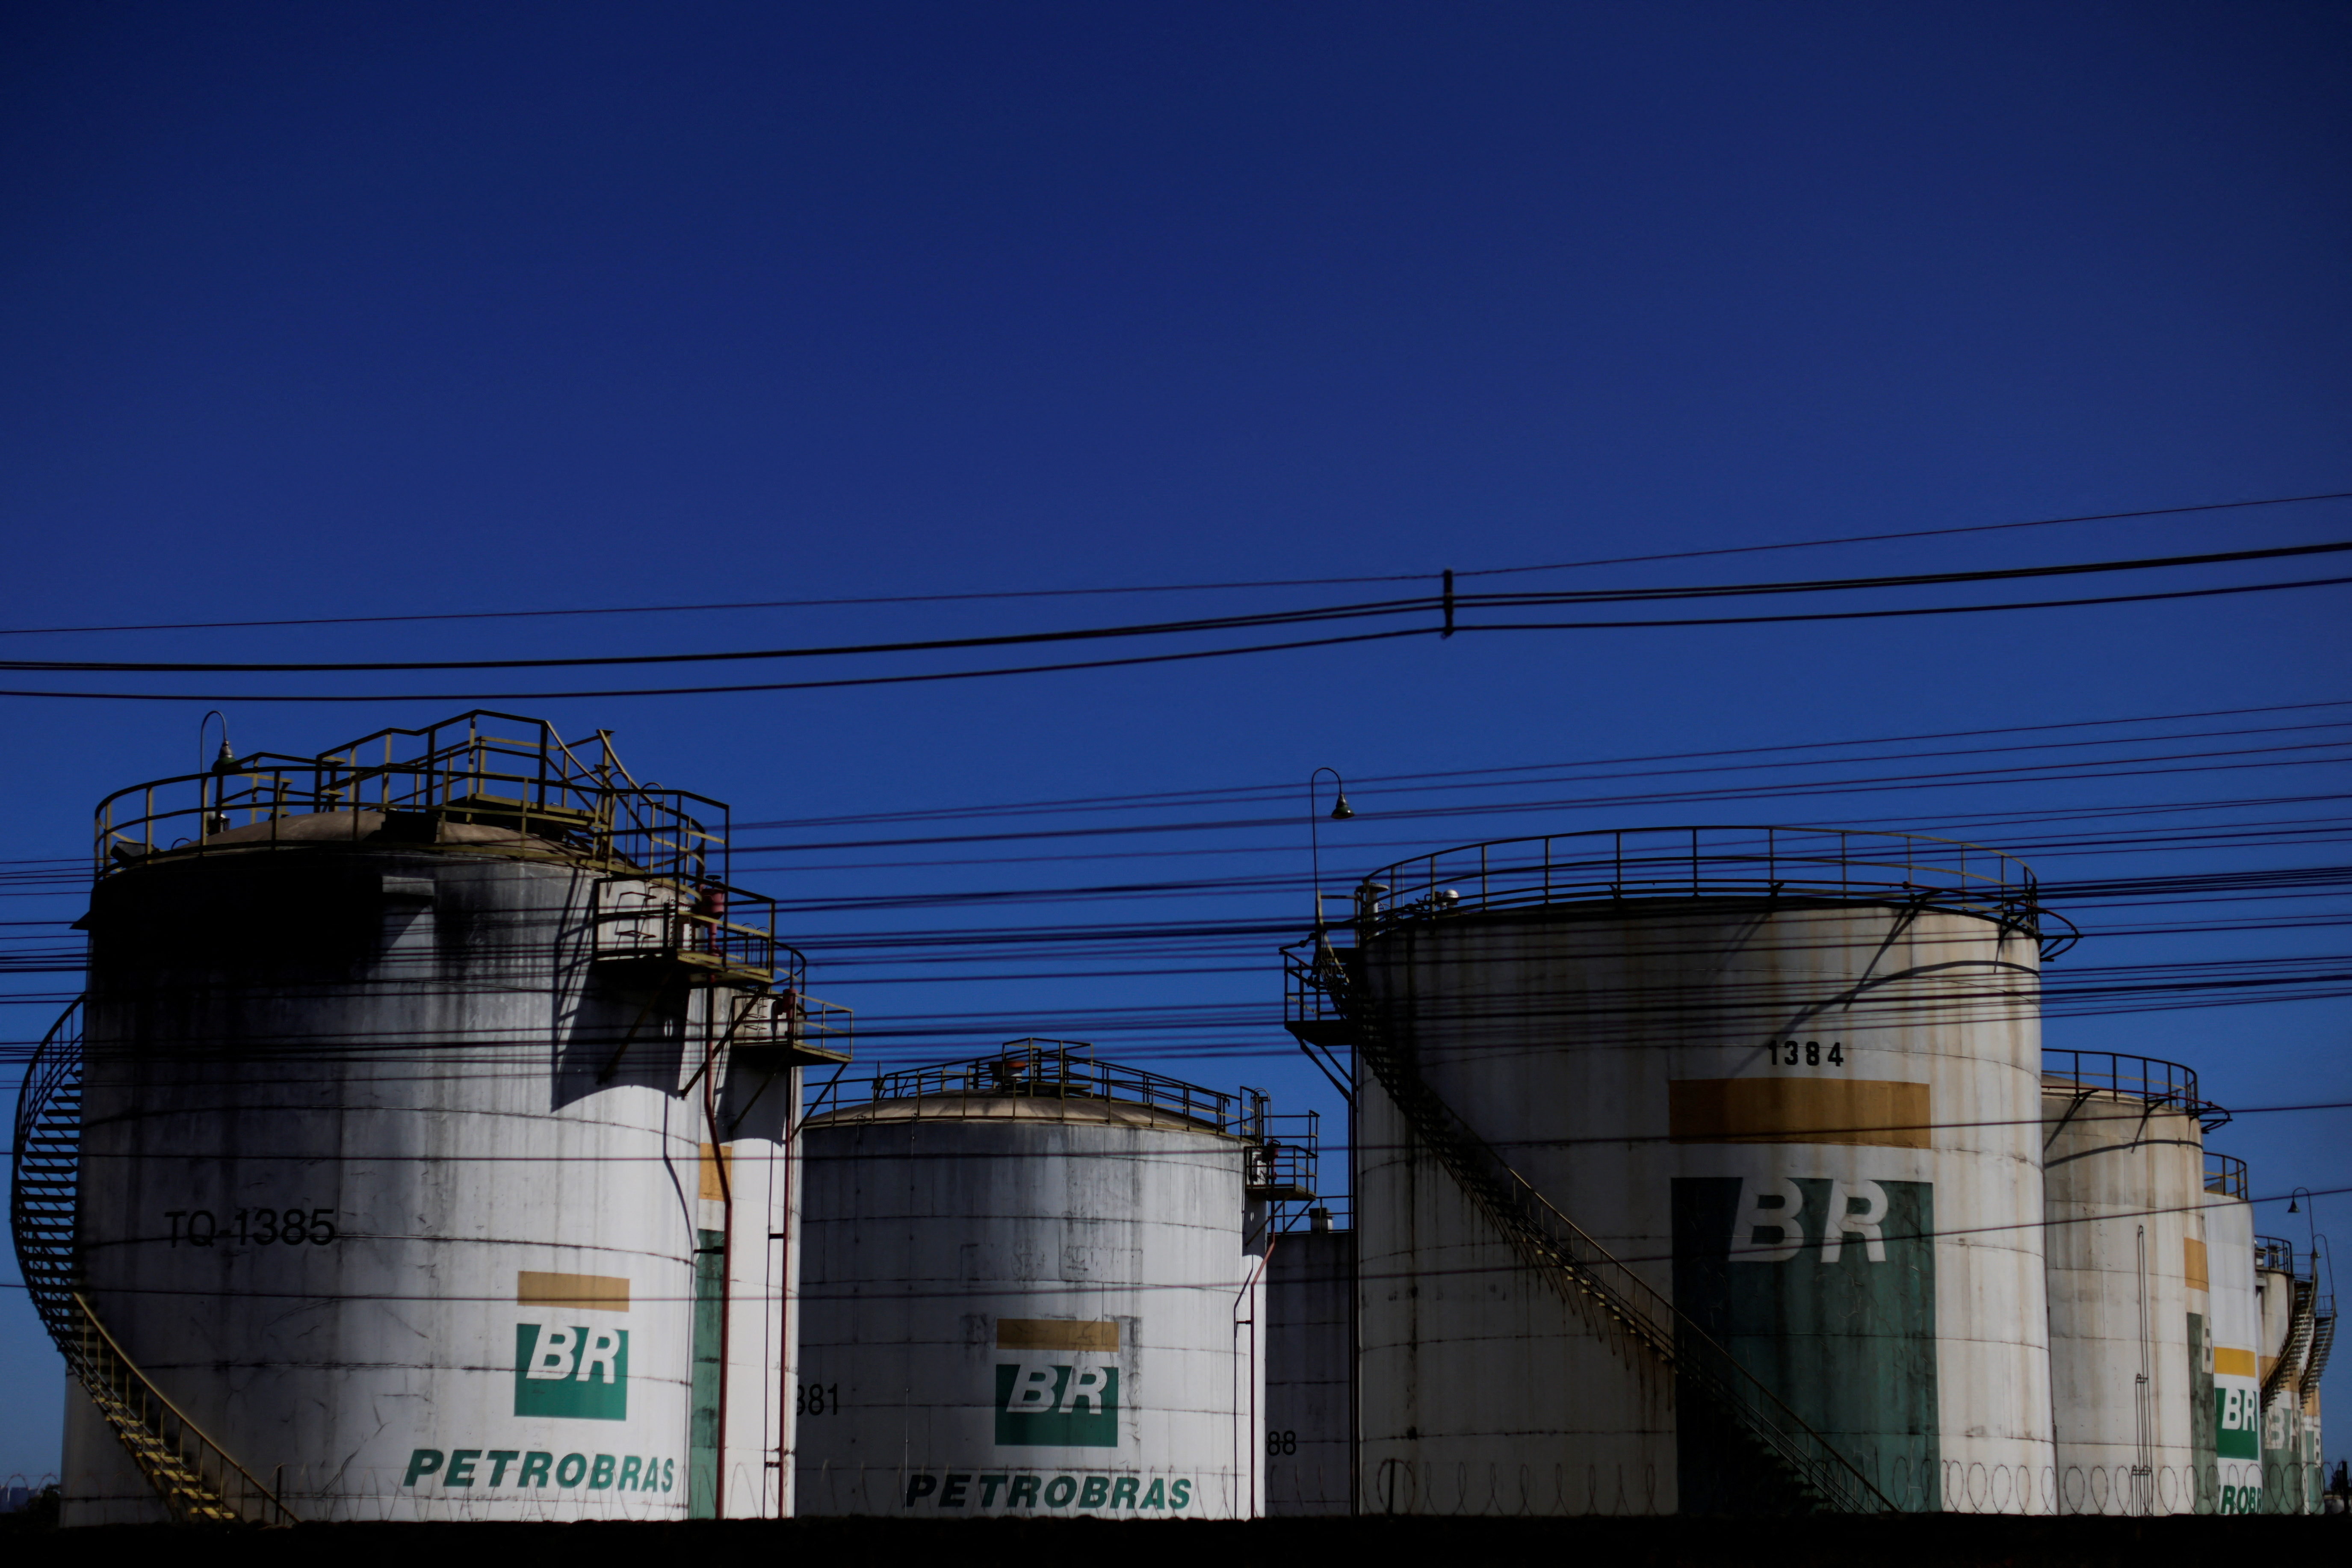 Brazilian oil company Petrobras in Brasilia